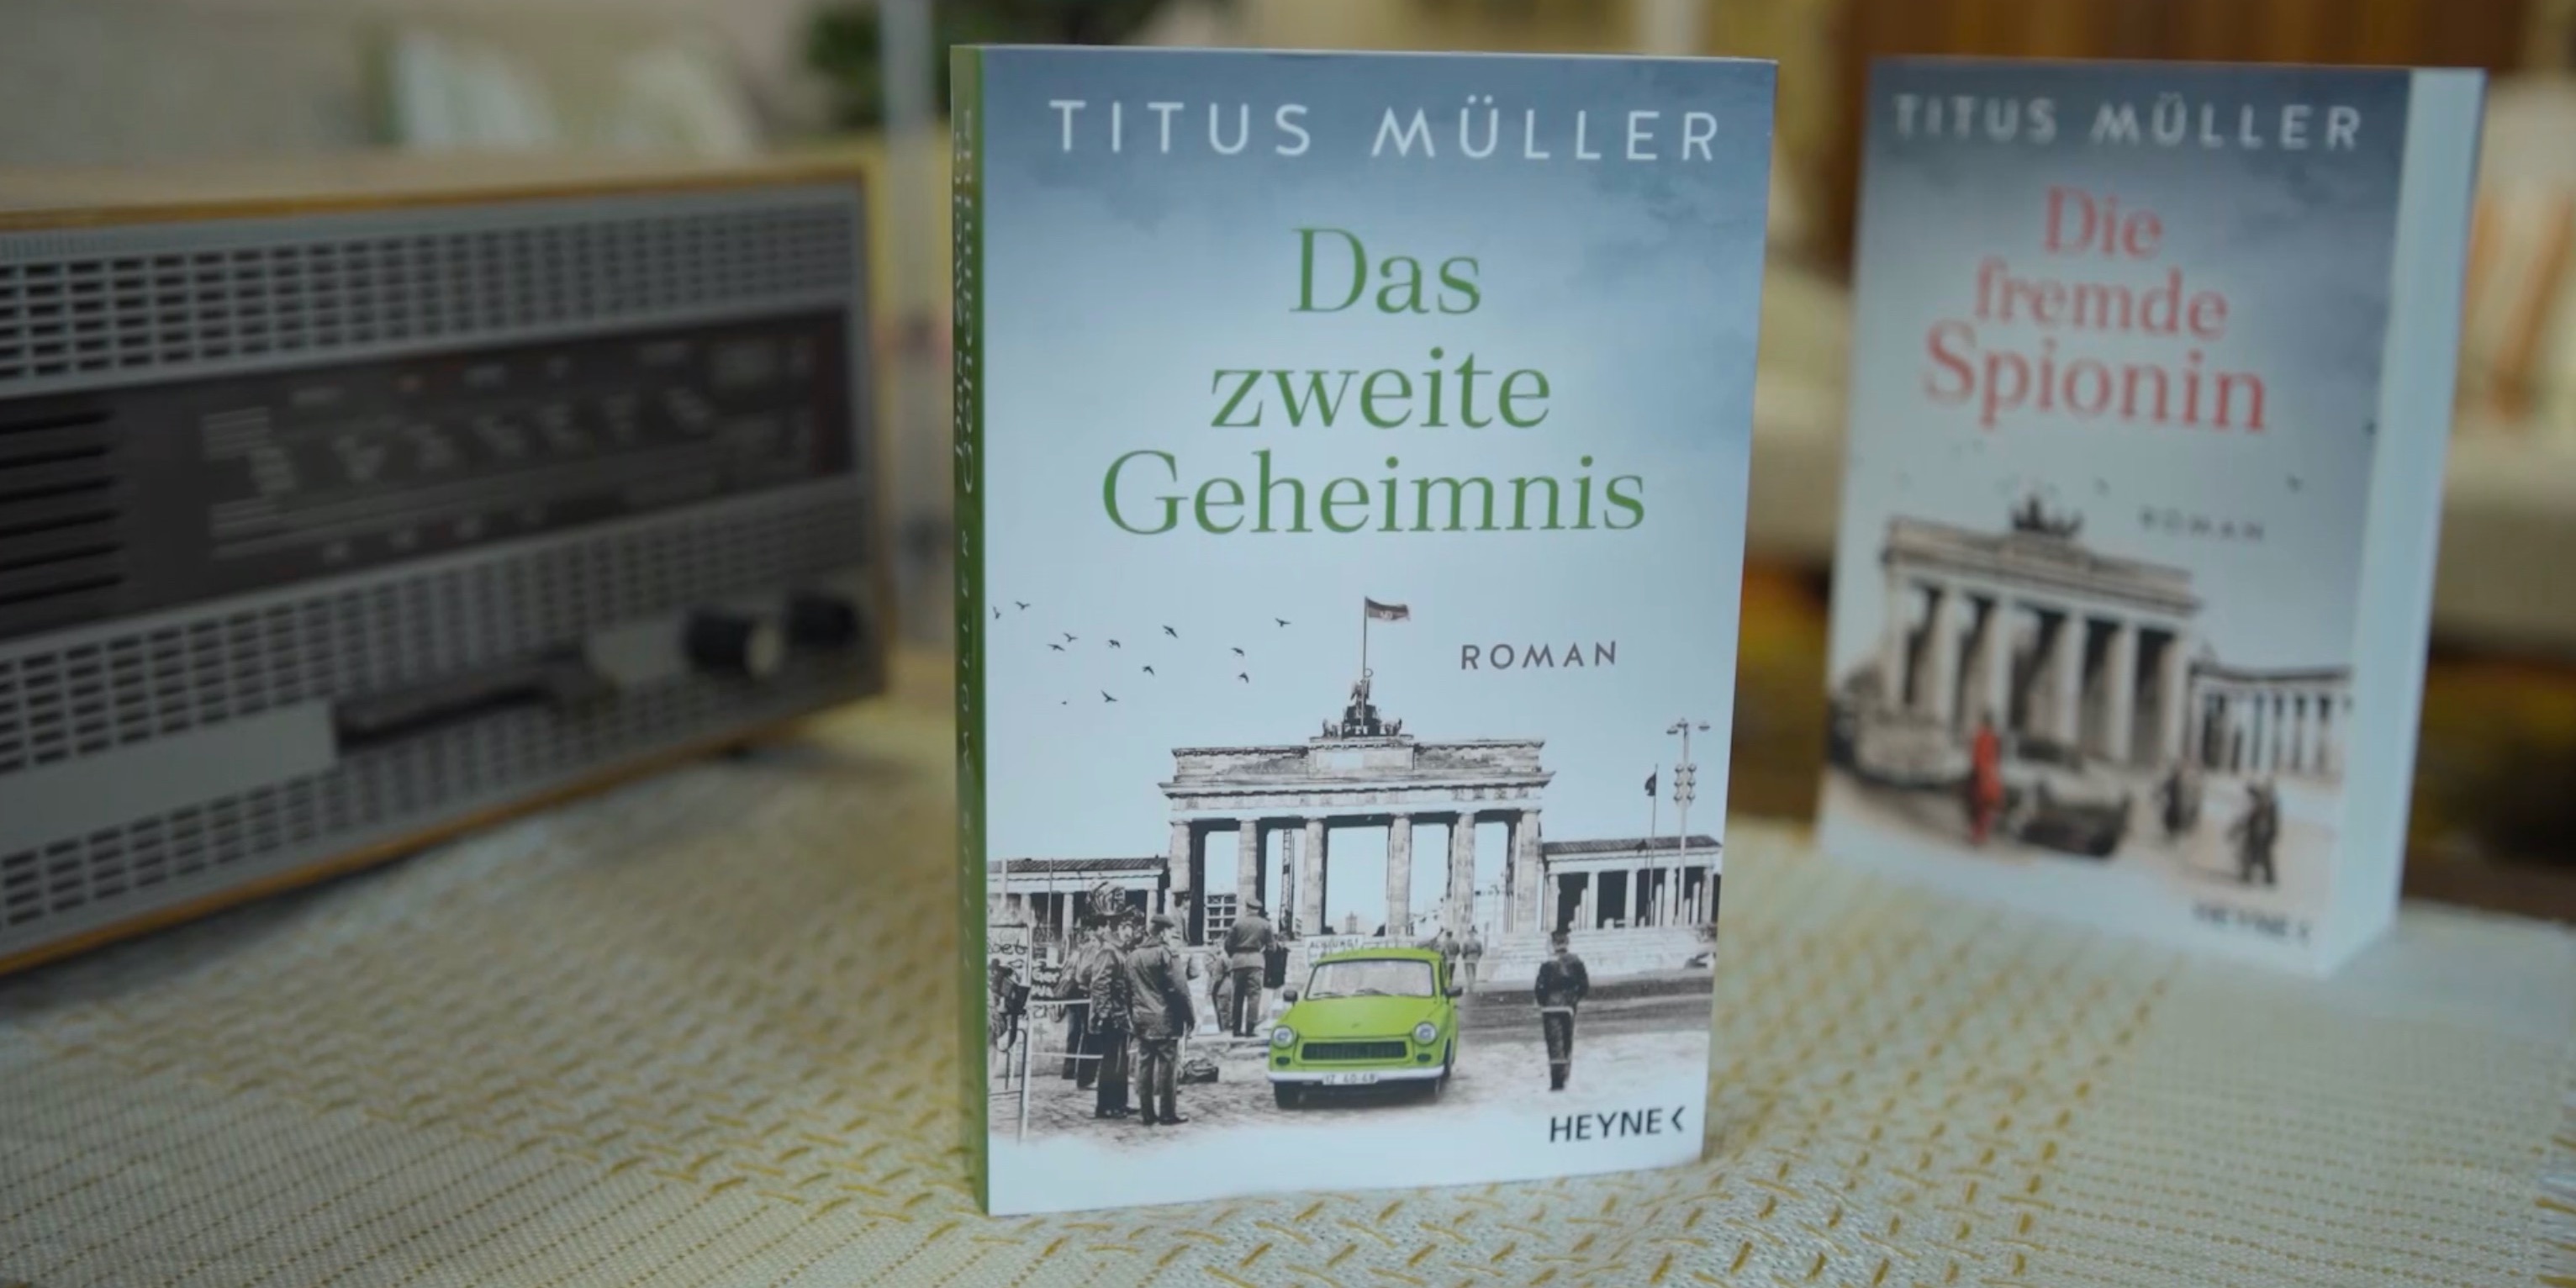 Interview: Das zweite Geheimnis (Titus Müller)